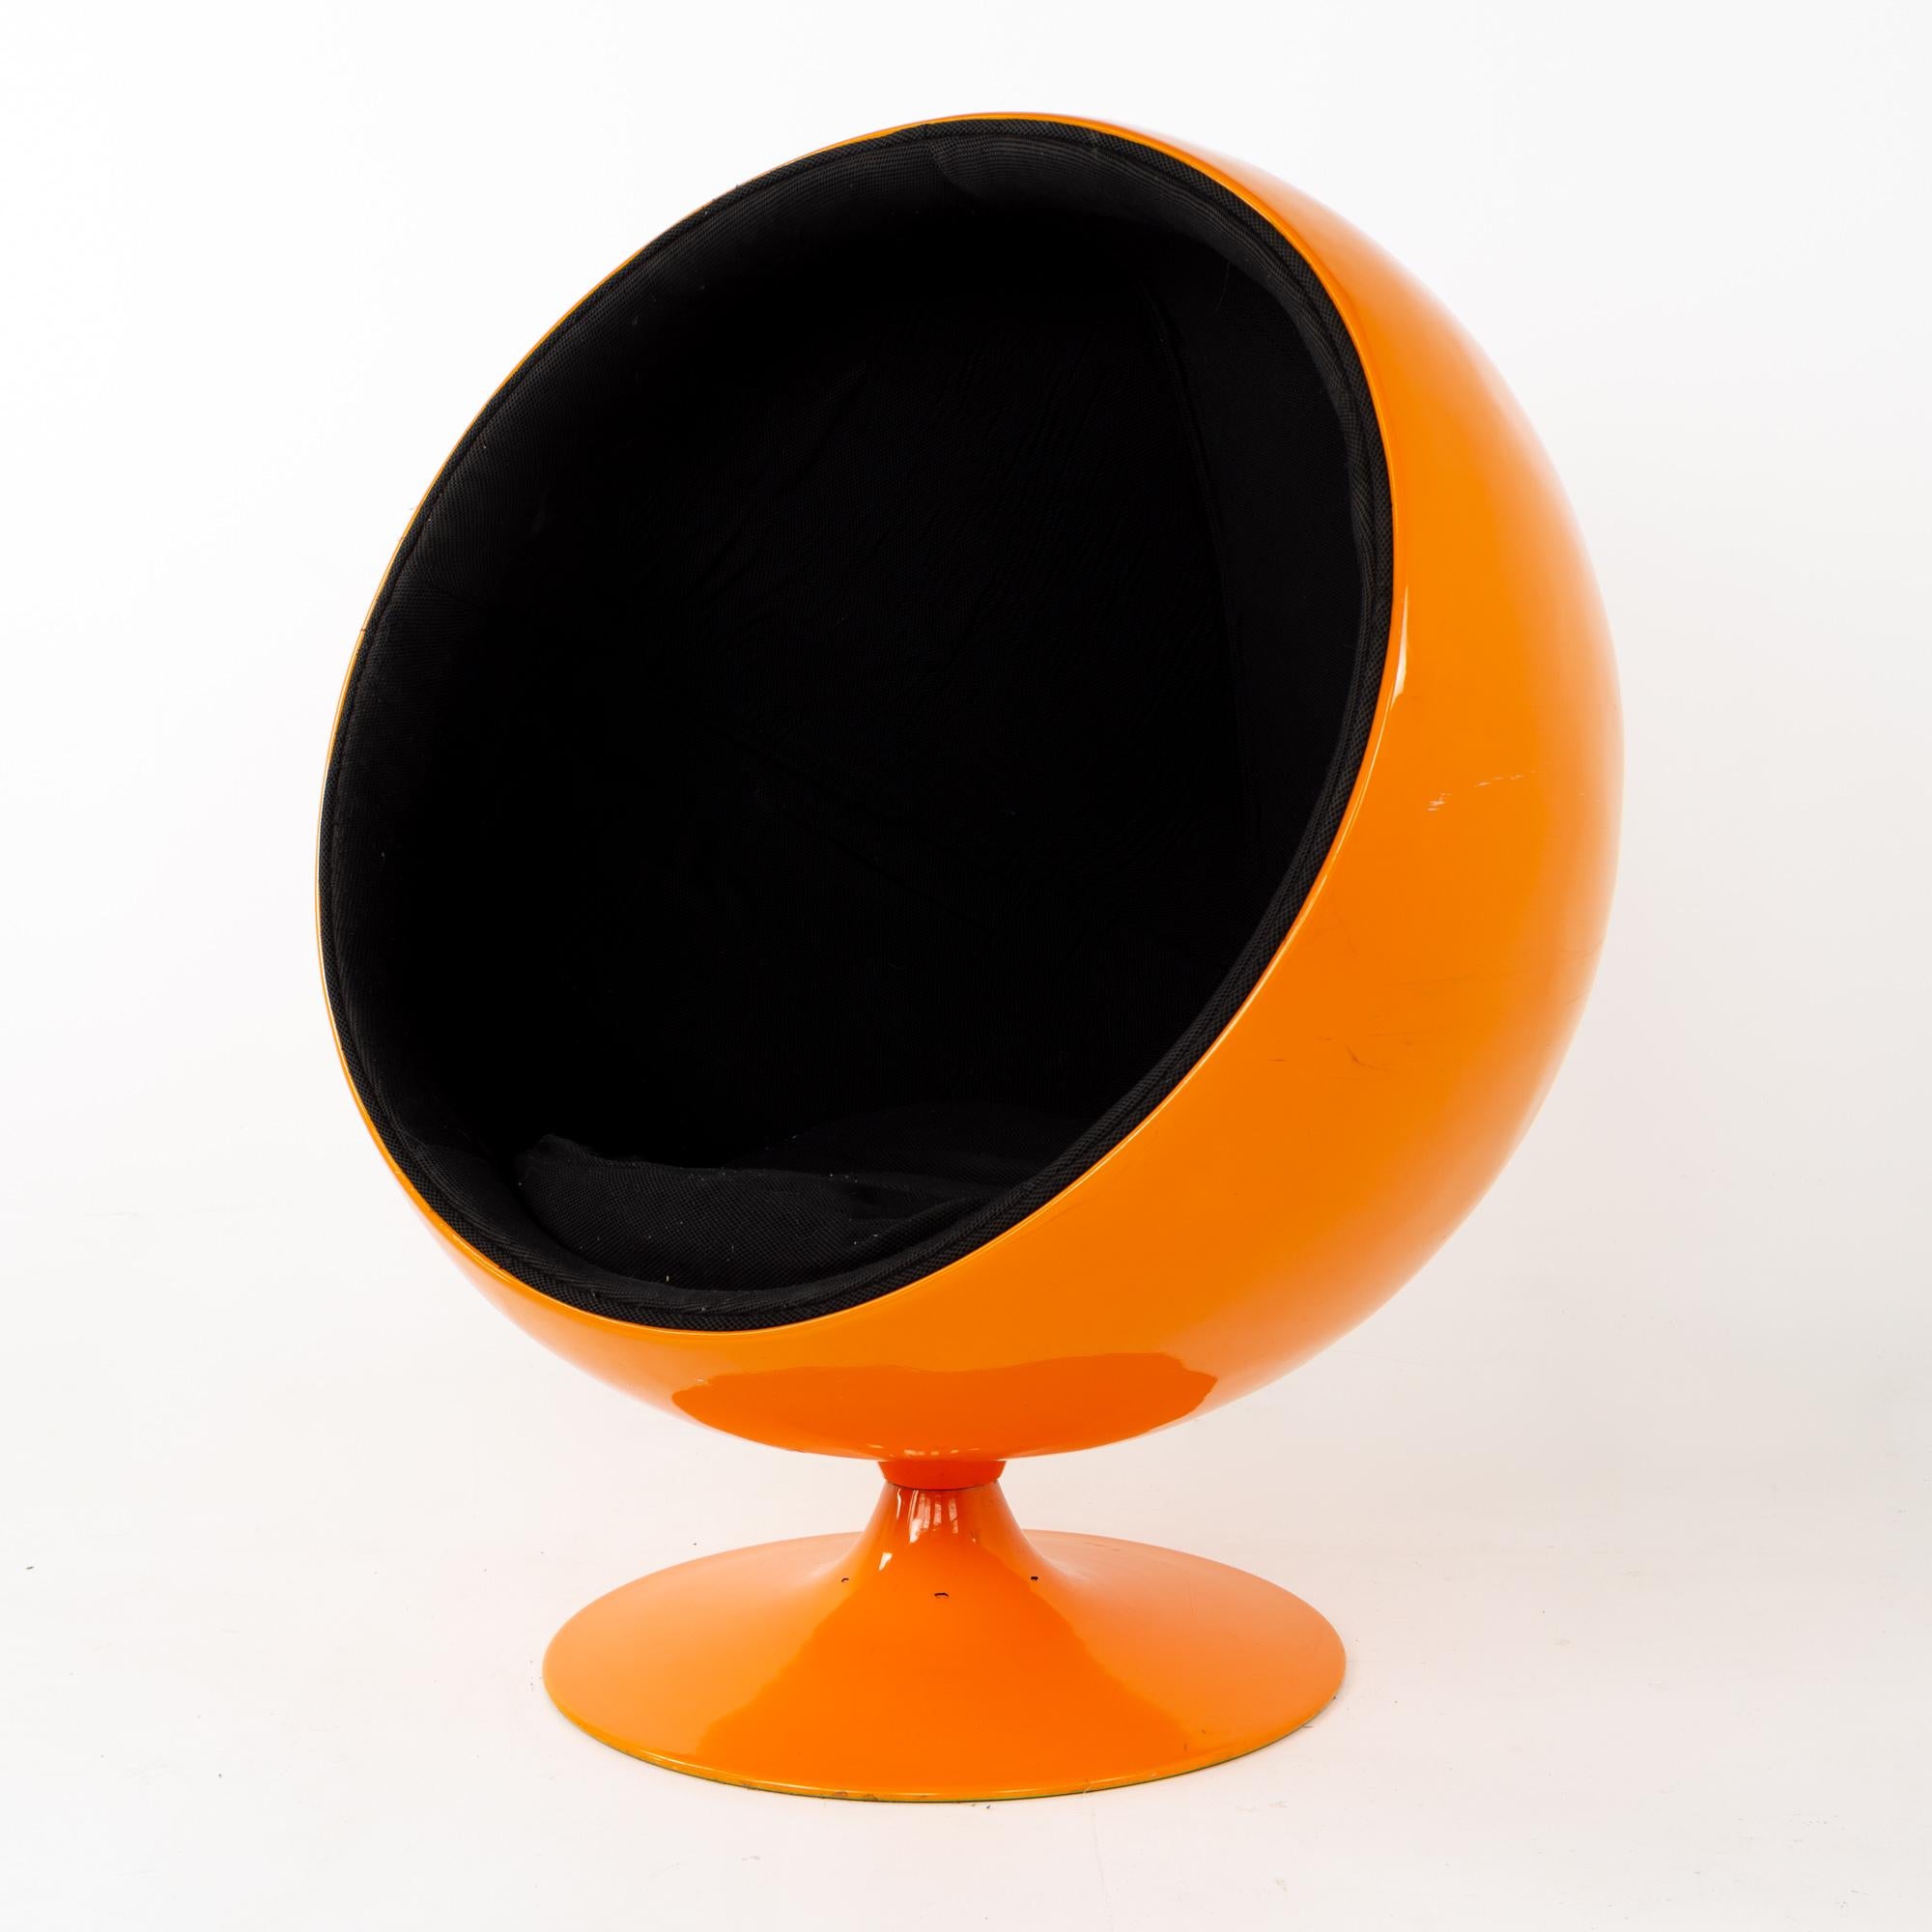 Mid-Century Modern Eero Aarnio Style Midcentury Orange Ball Chair